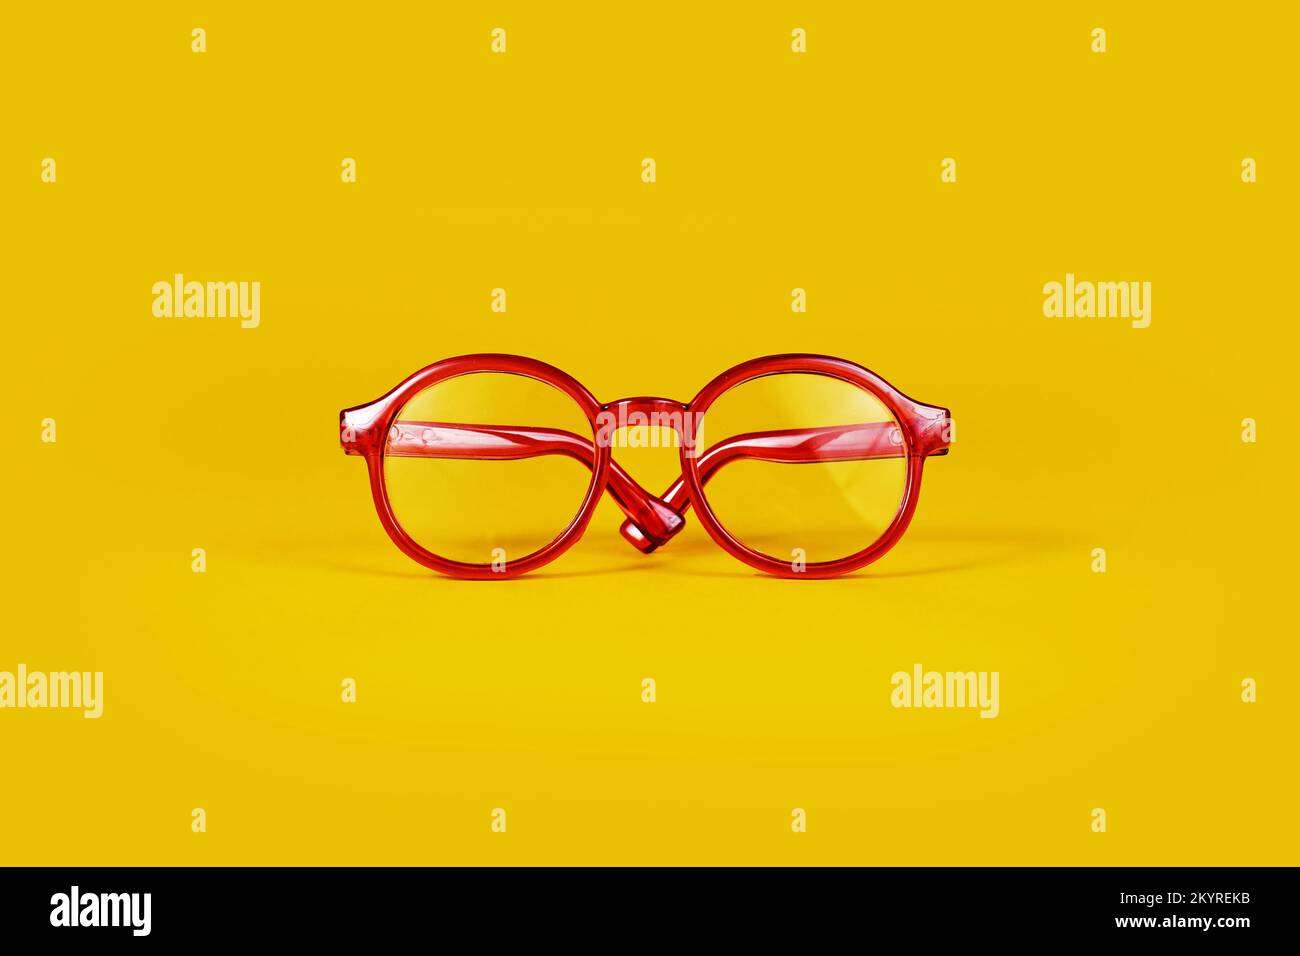 Petites lunettes rouges rondes sur fond jaune Banque D'Images